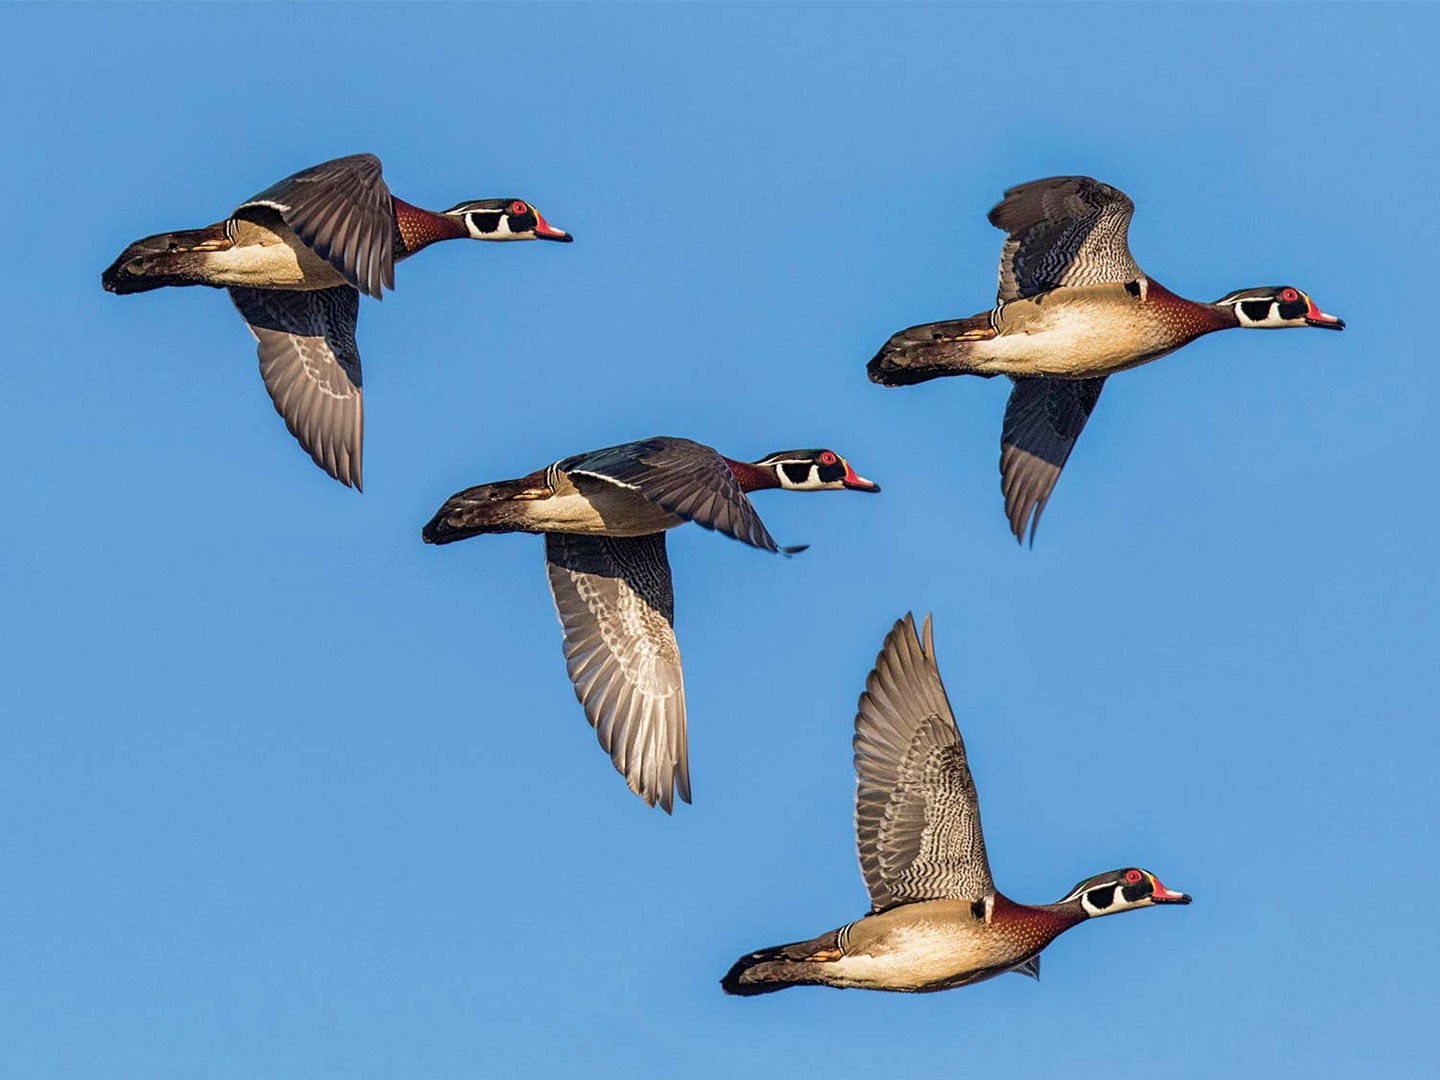 A flock of four wood ducks in flight in a blue sky.